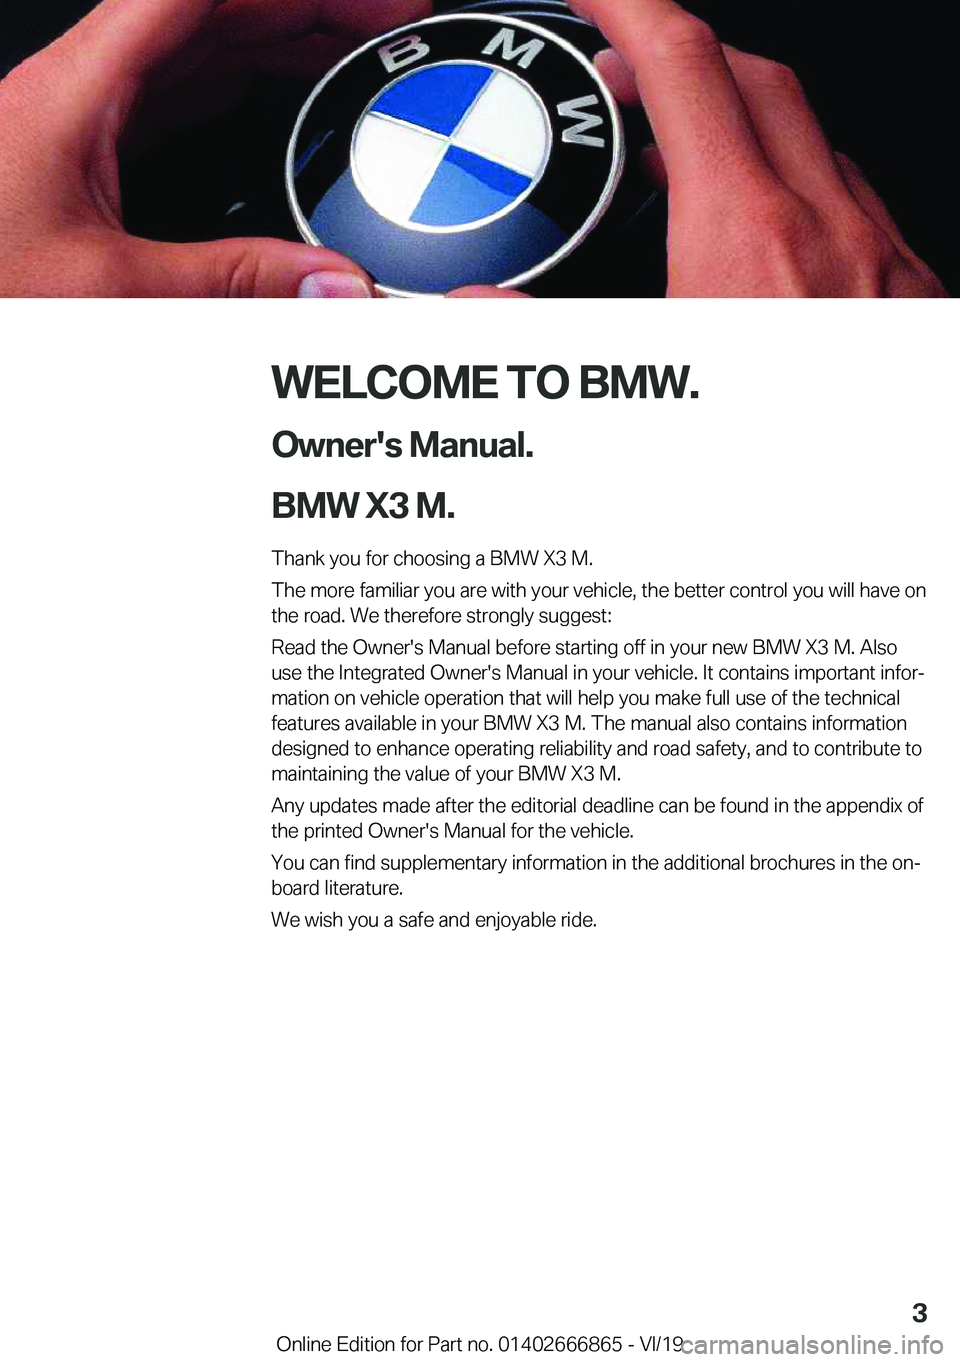 BMW X3 M 2020  Owners Manual �W�E�L�C�O�M�E��T�O��B�M�W�.�O�w�n�e�r�'�s��M�a�n�u�a�l�.
�B�M�W��X�3��M�.
�T�h�a�n�k��y�o�u��f�o�r��c�h�o�o�s�i�n�g��a��B�M�W��X�3��M�.
�T�h�e��m�o�r�e��f�a�m�i�l�i�a�r��y�o�u��a�